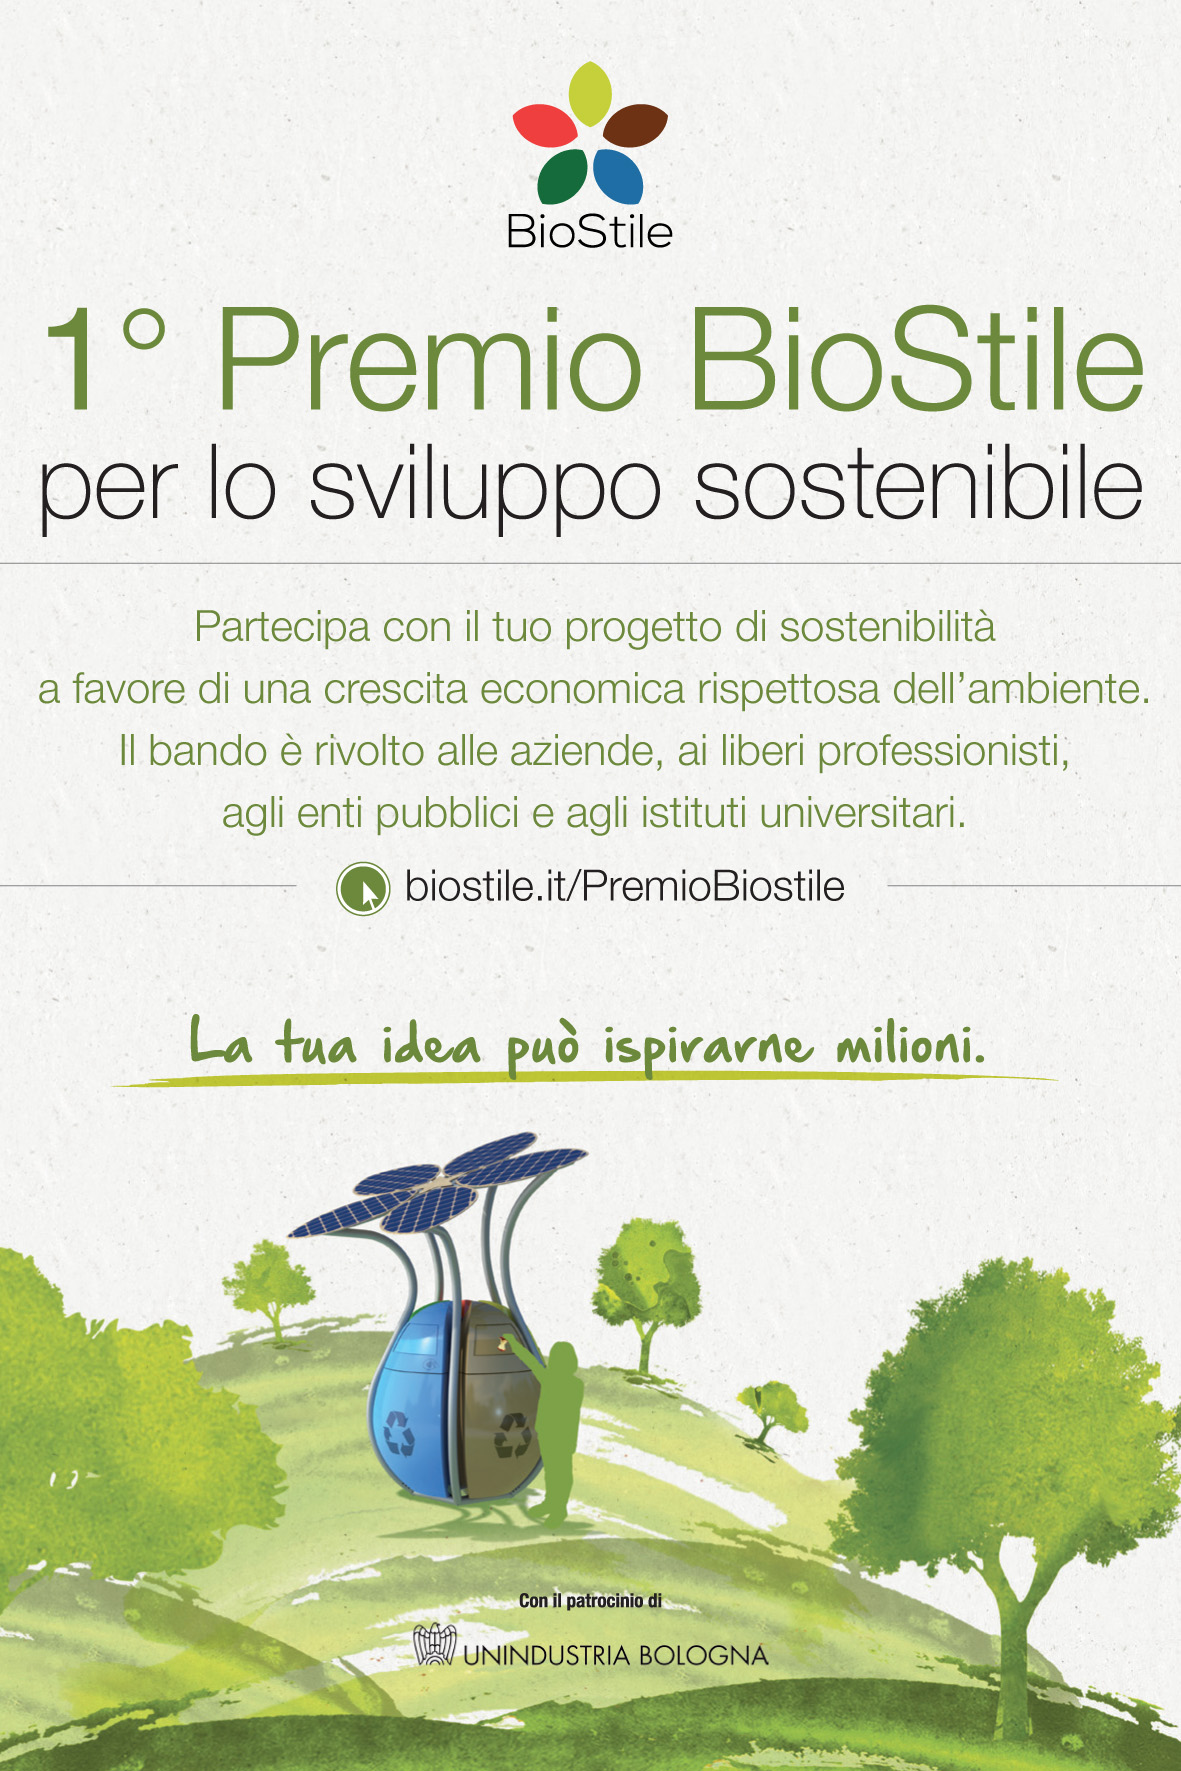 BioStile istituisce il “1° Premio per lo sviluppo sostenibile”